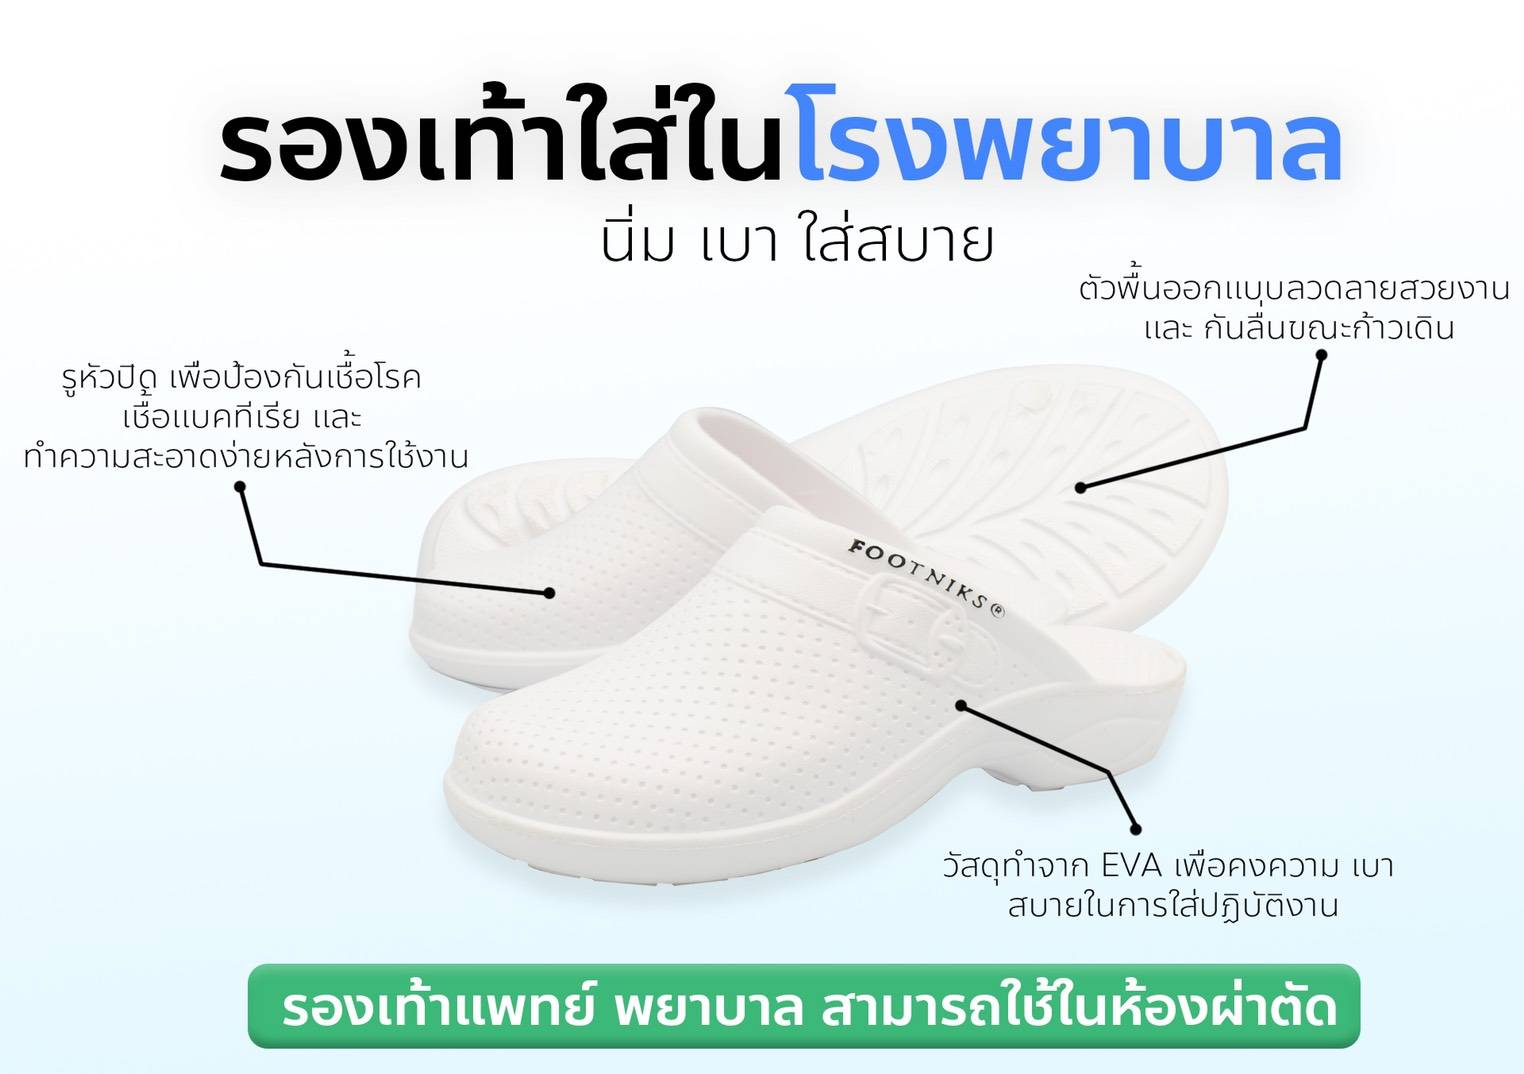 Sustainable รองเท้าแตะแบบสวม รองเท้าพยาบาล รองเท้าเปิดส้น  รองเท้าพยาบาลสีขาว รองเท้าใส่ในโรงพยาบาล รองเท้ารัดส้น รองเท้าขาว